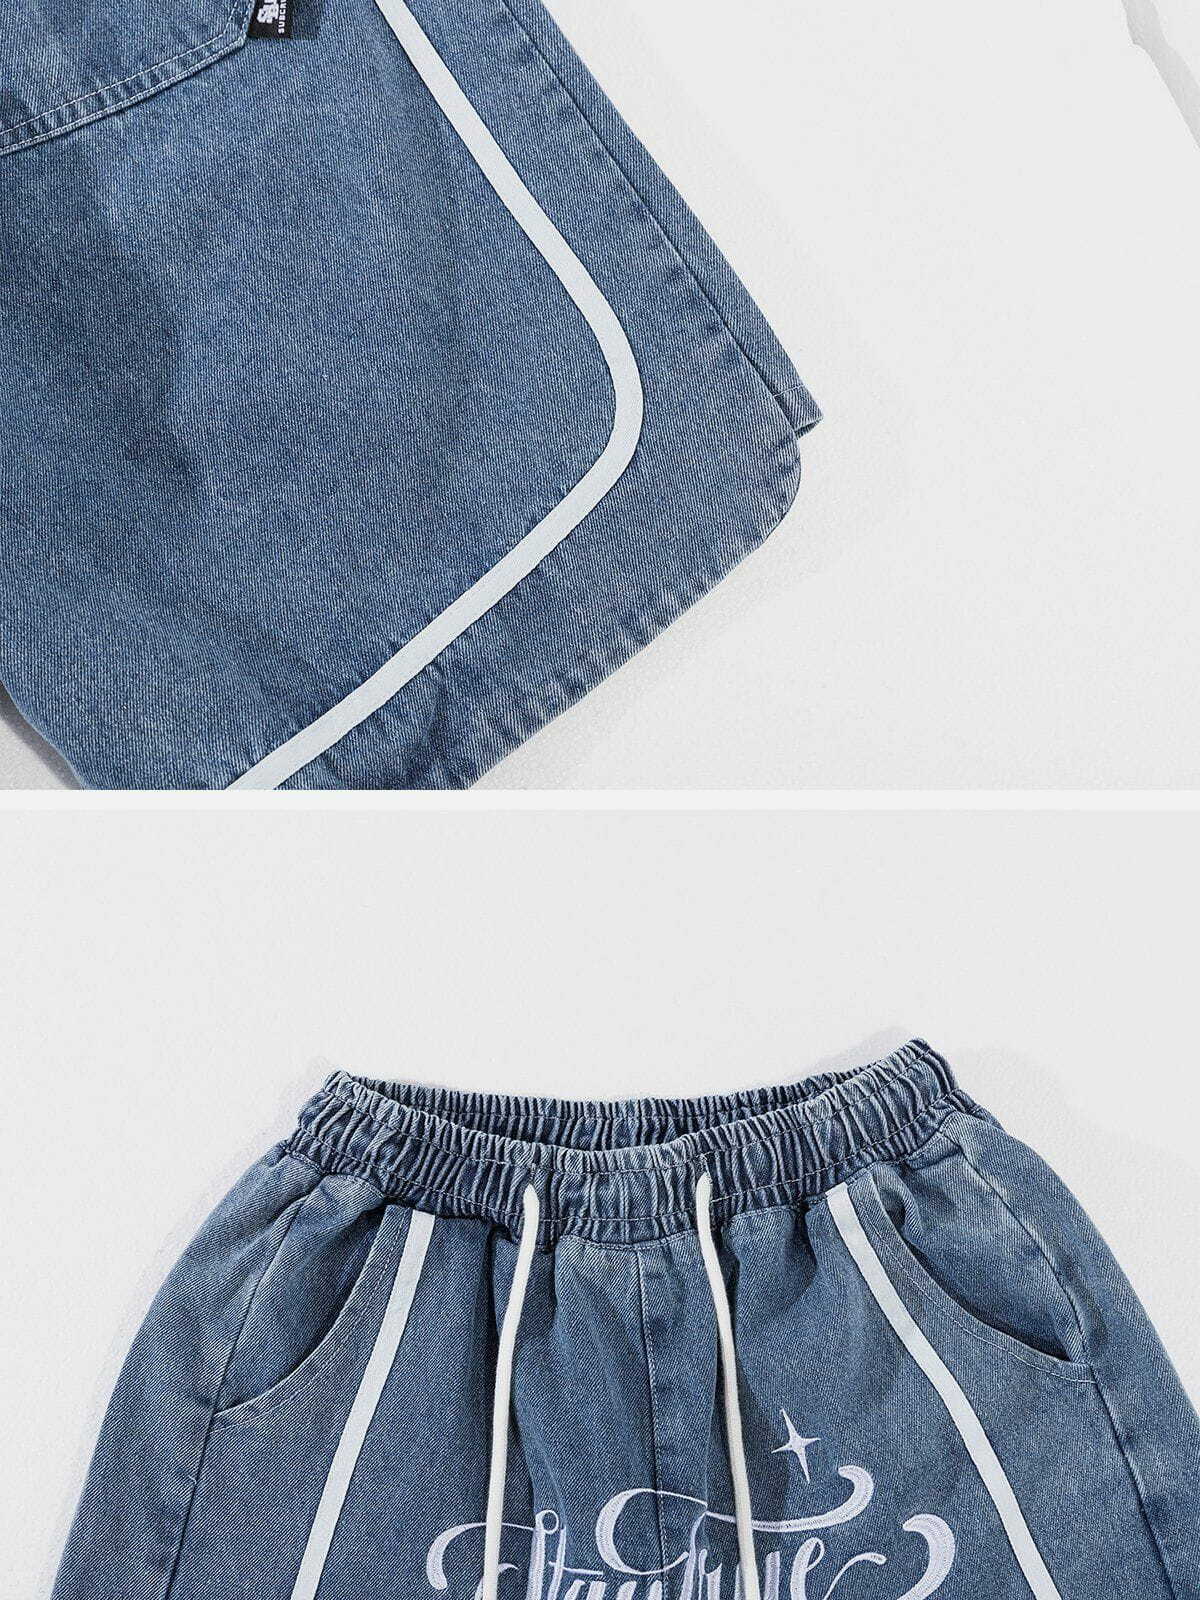 patchwork denim shorts edgy streetwear statement 4068